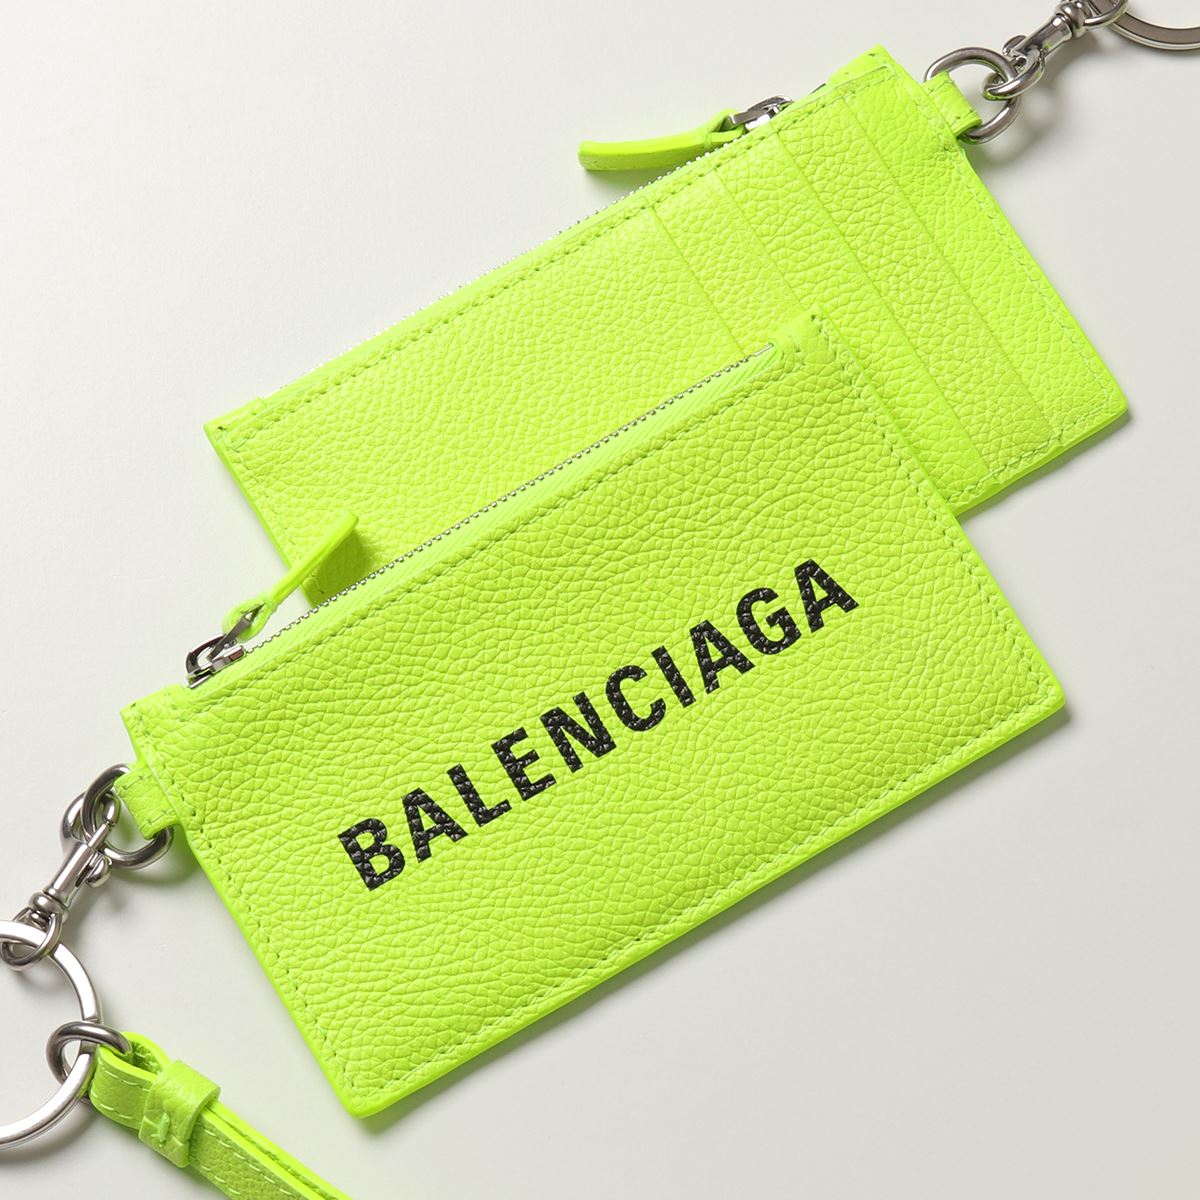 BALENCIAGA バレンシアガ 594548 2UQ13 レザー コイン&カードケース ネックストラップ付き ネックポーチ フラグメントケース  7260 メンズ | インポートセレクト musee